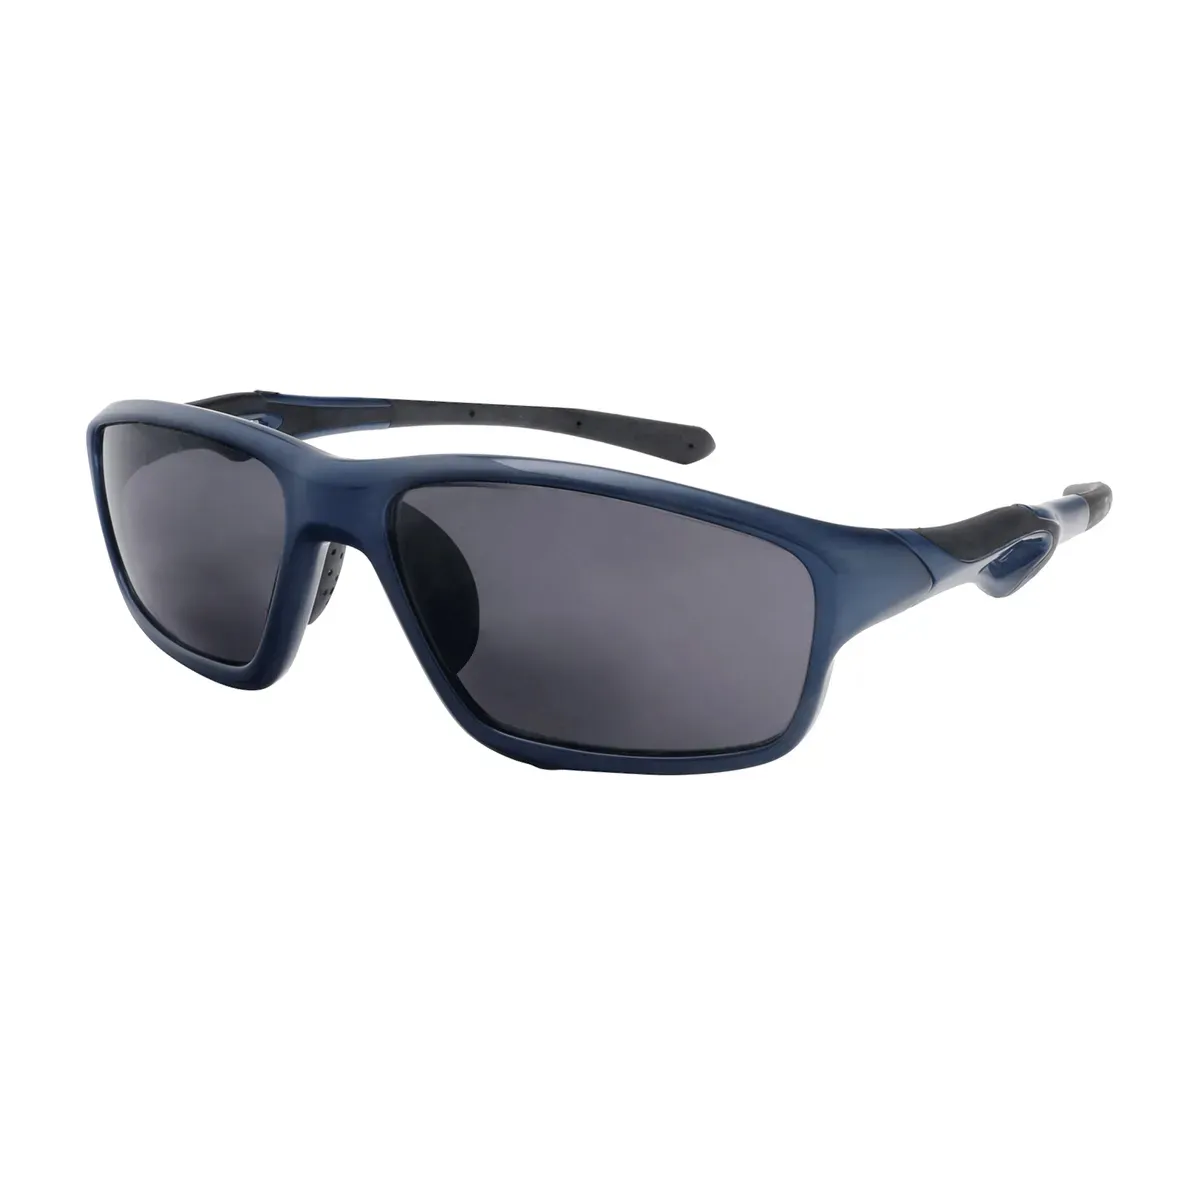 Kent - Rectangle Blue Sunglasses for Men & Women